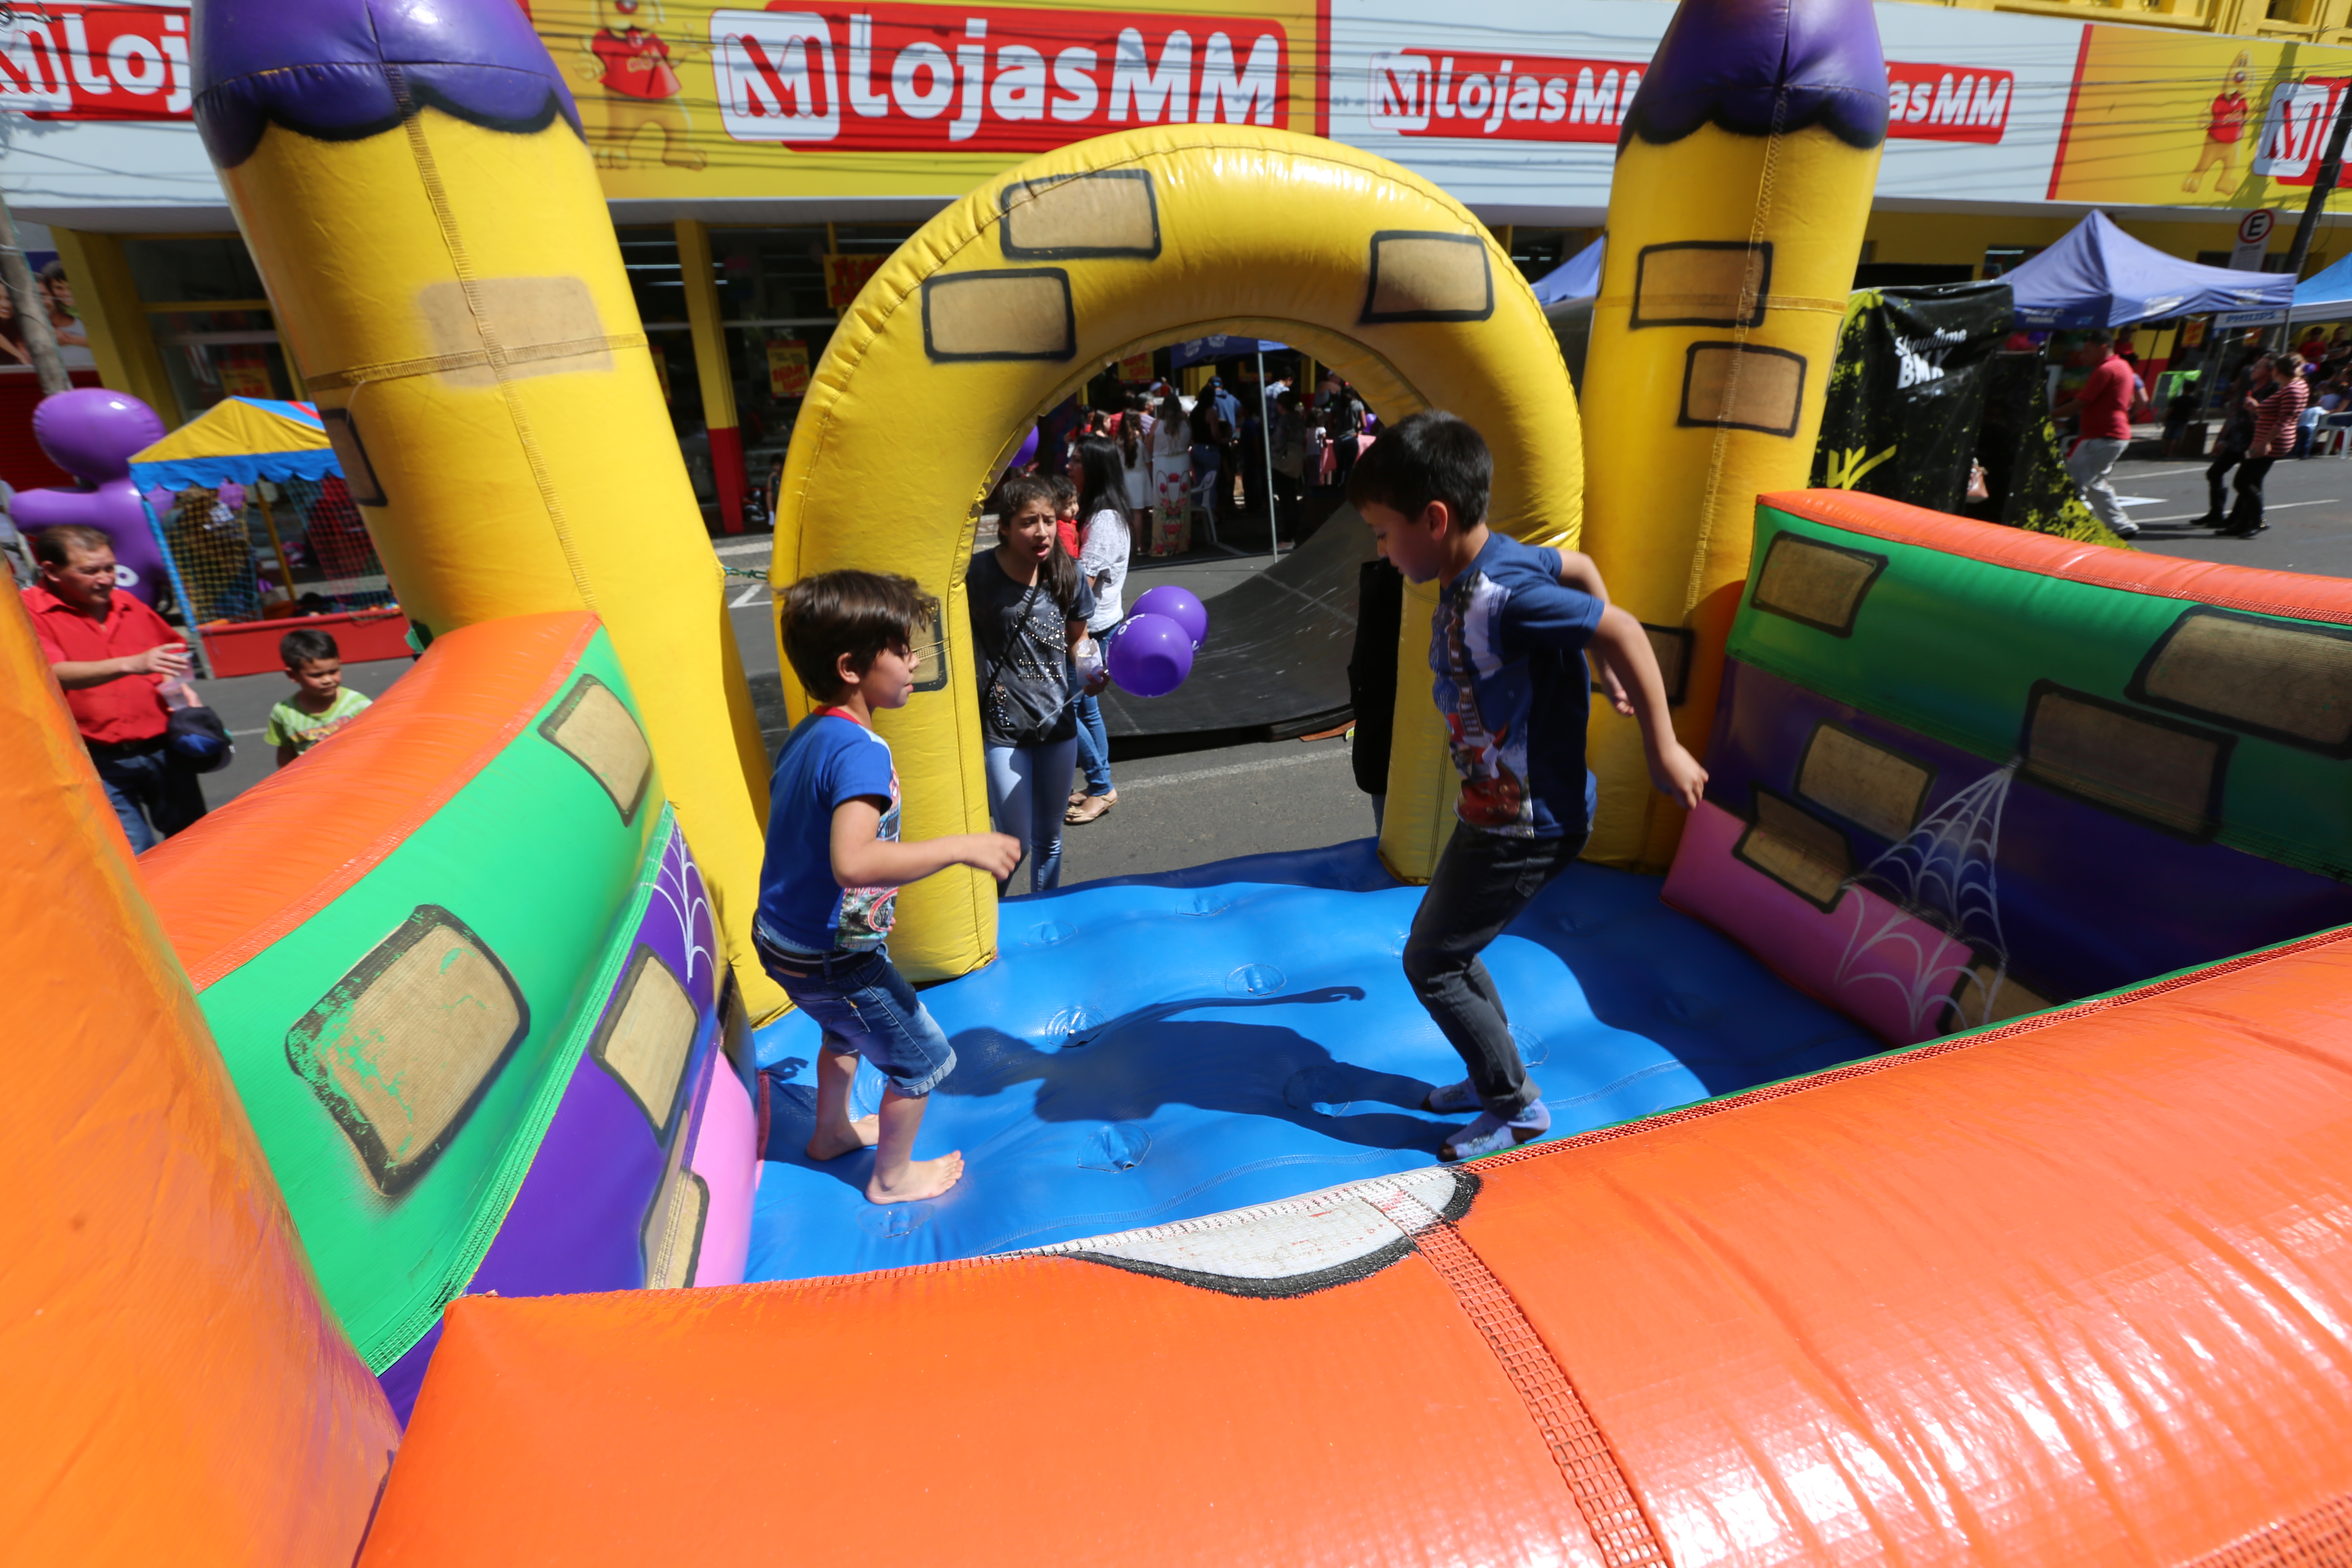 Lojas MM realiza festa em comemoração ao Dia das Crianças